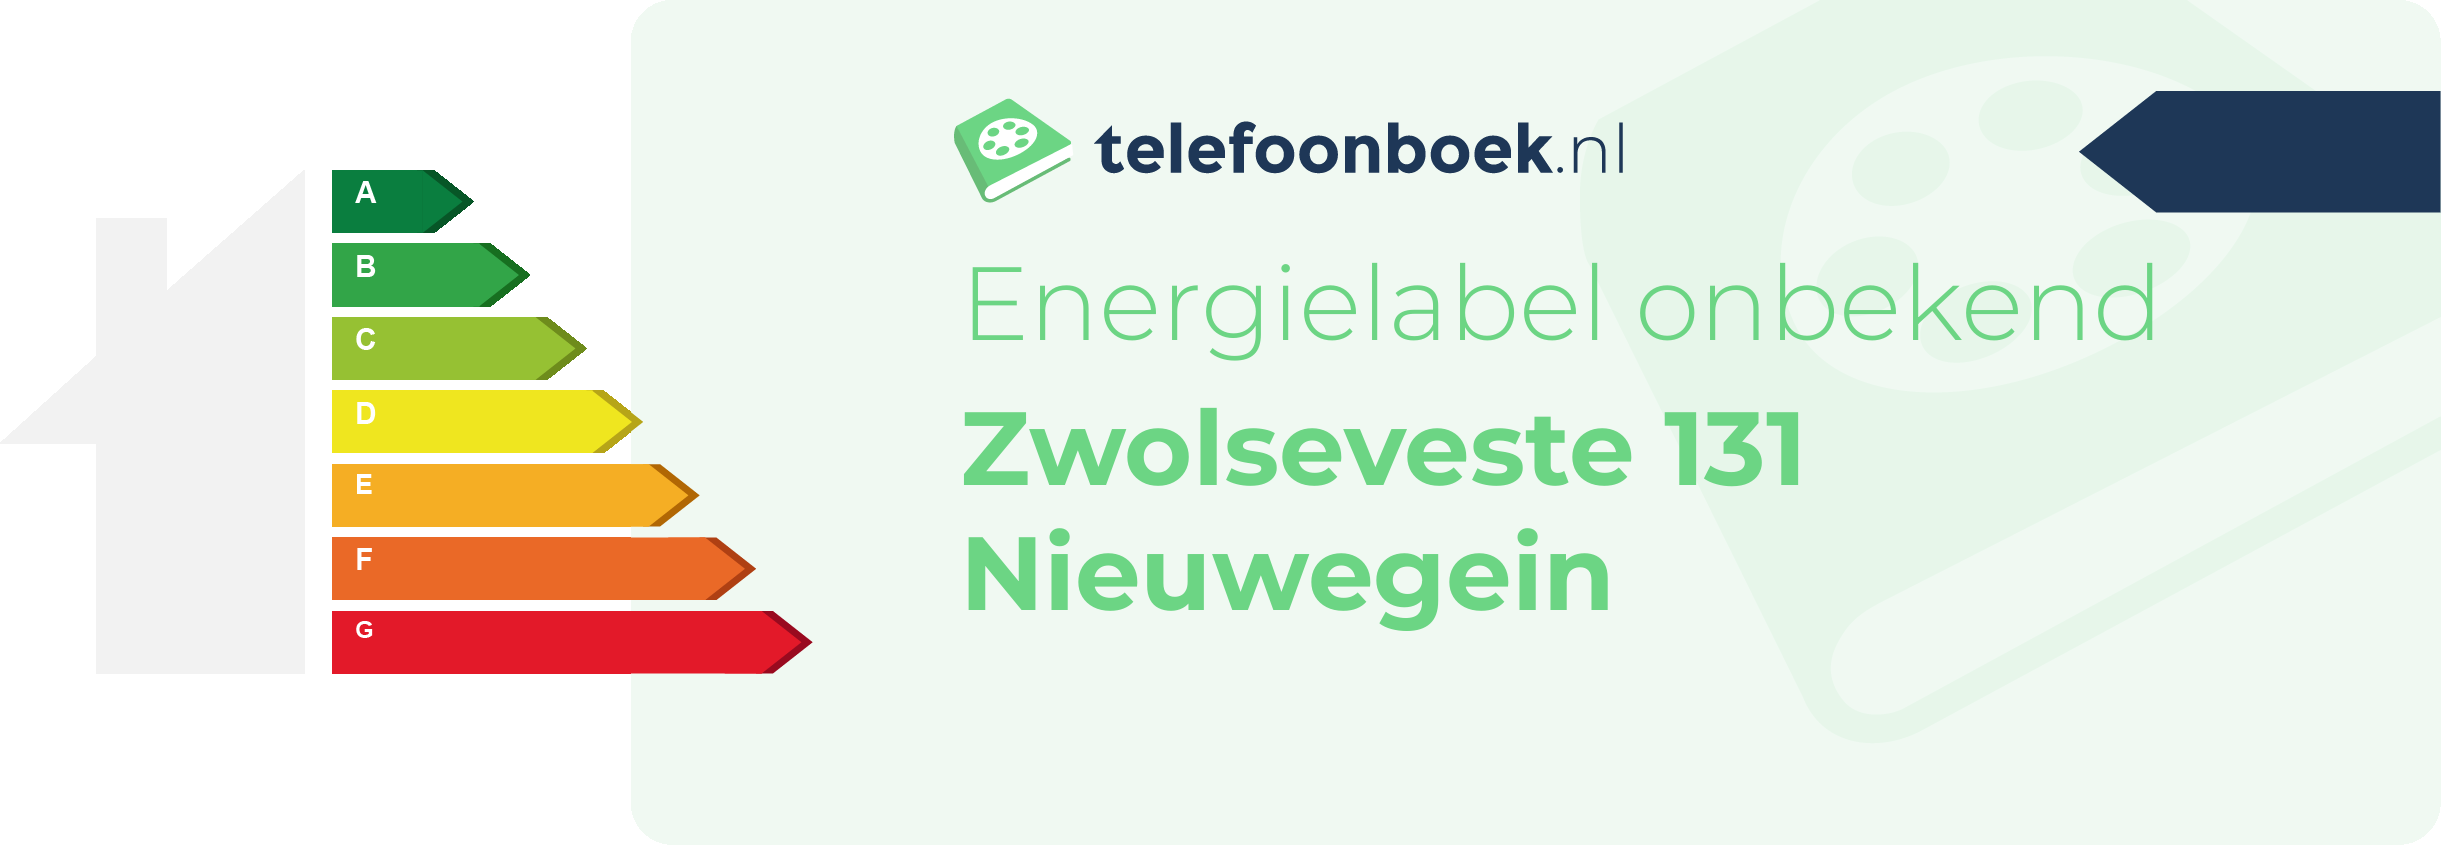 Energielabel Zwolseveste 131 Nieuwegein